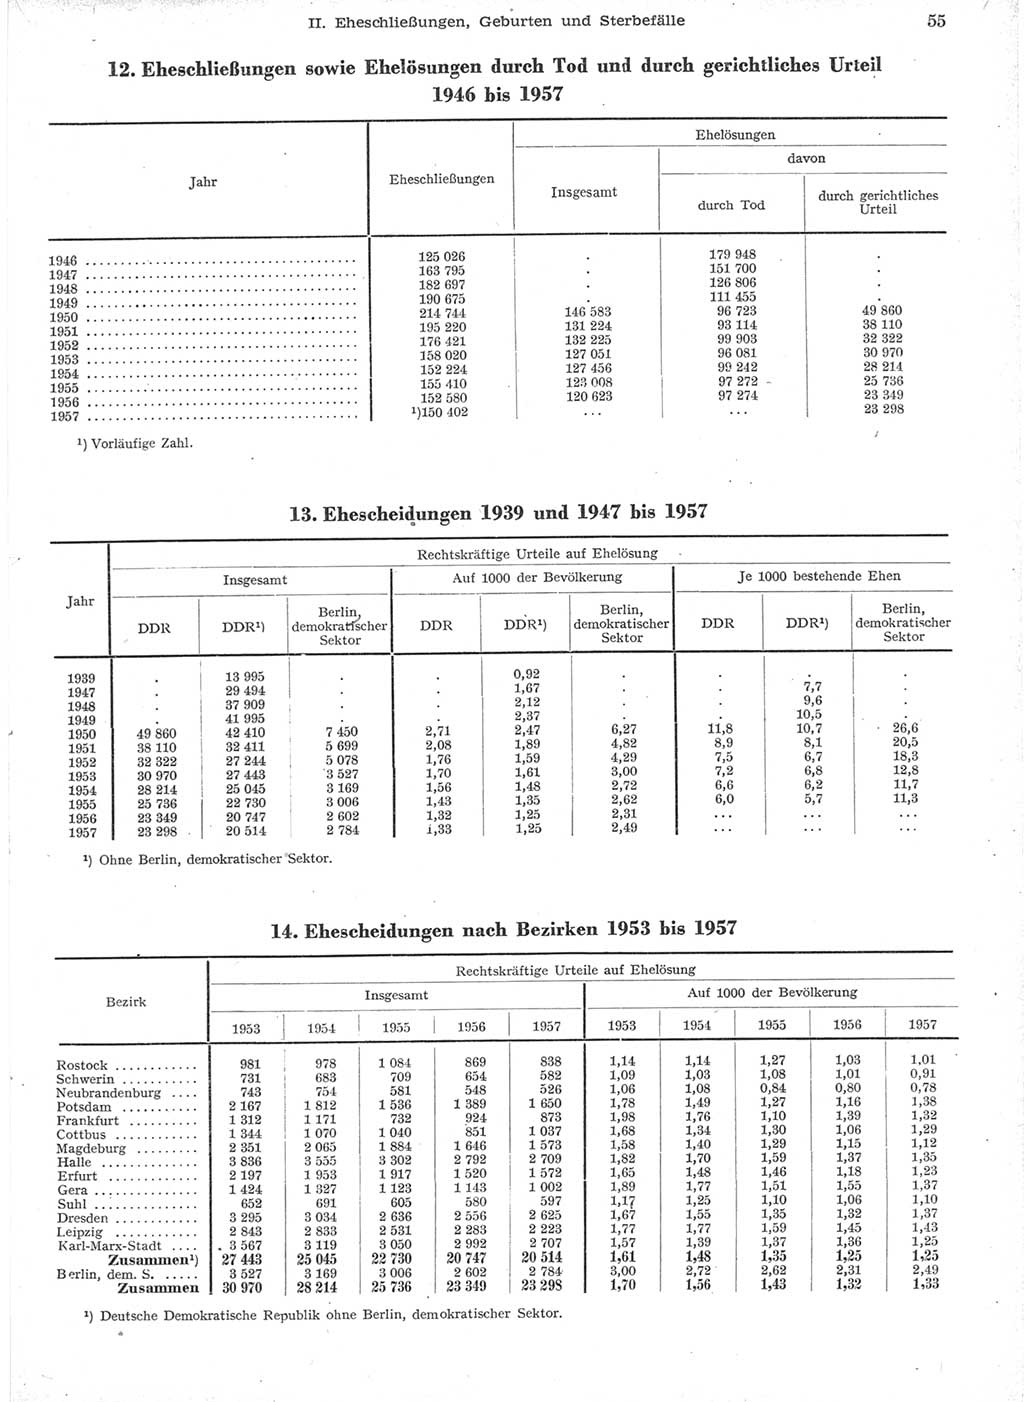 Statistisches Jahrbuch der Deutschen Demokratischen Republik (DDR) 1957, Seite 55 (Stat. Jb. DDR 1957, S. 55)